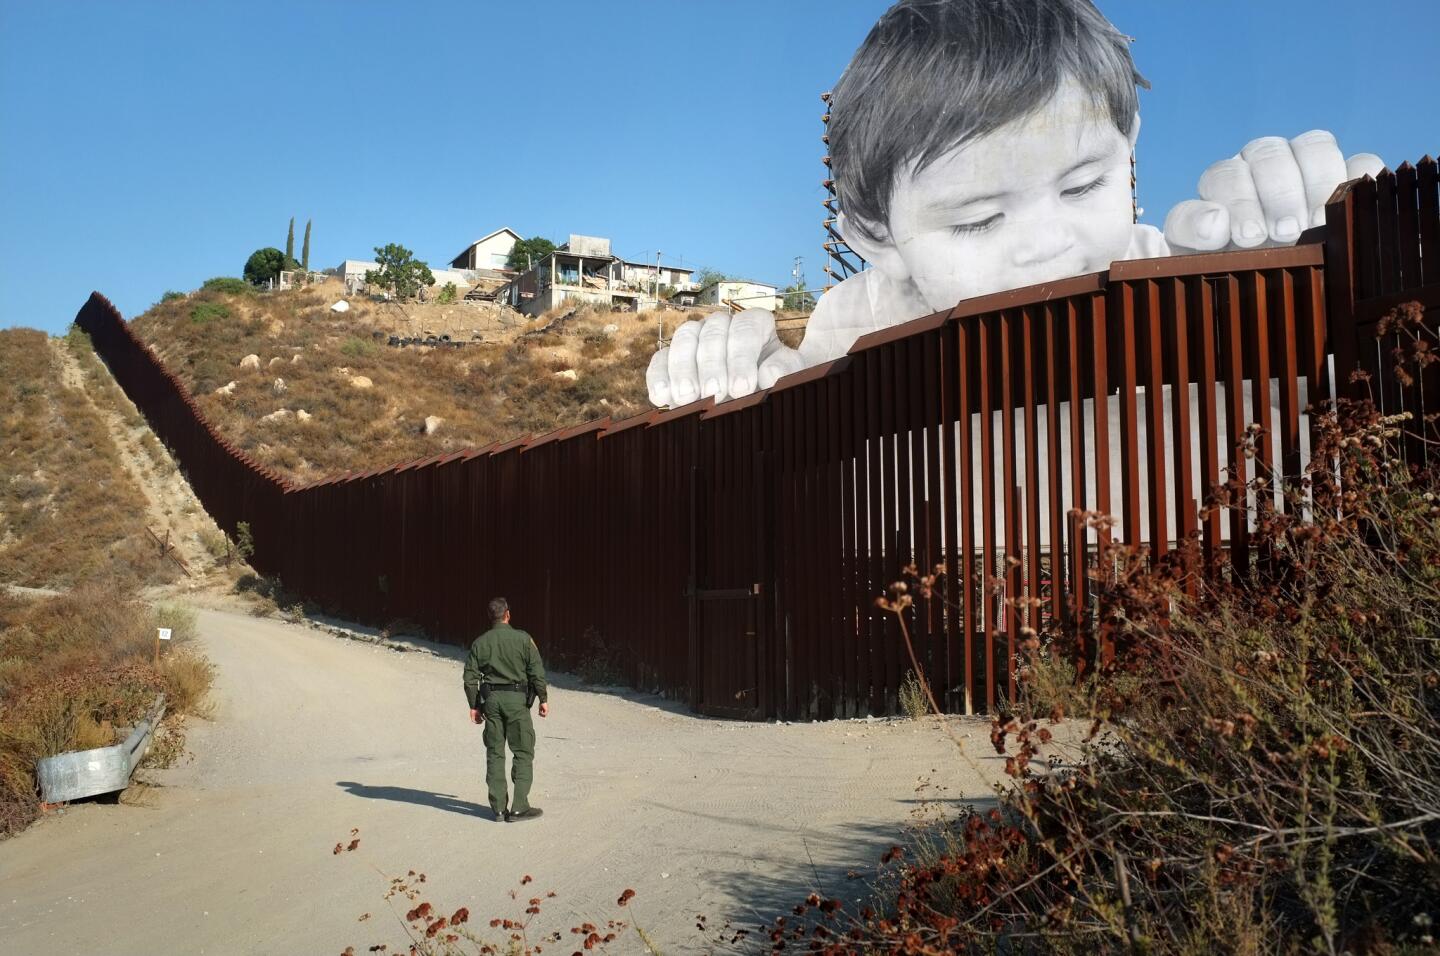 Un agente de la Patrulla Fronteriza estadounidense observa la obra 'Kikito', del artista y grafitero francés JR, en el muro que divide la frontera entre Tecate (Baja California, México) y San Diego (California, EEUU).